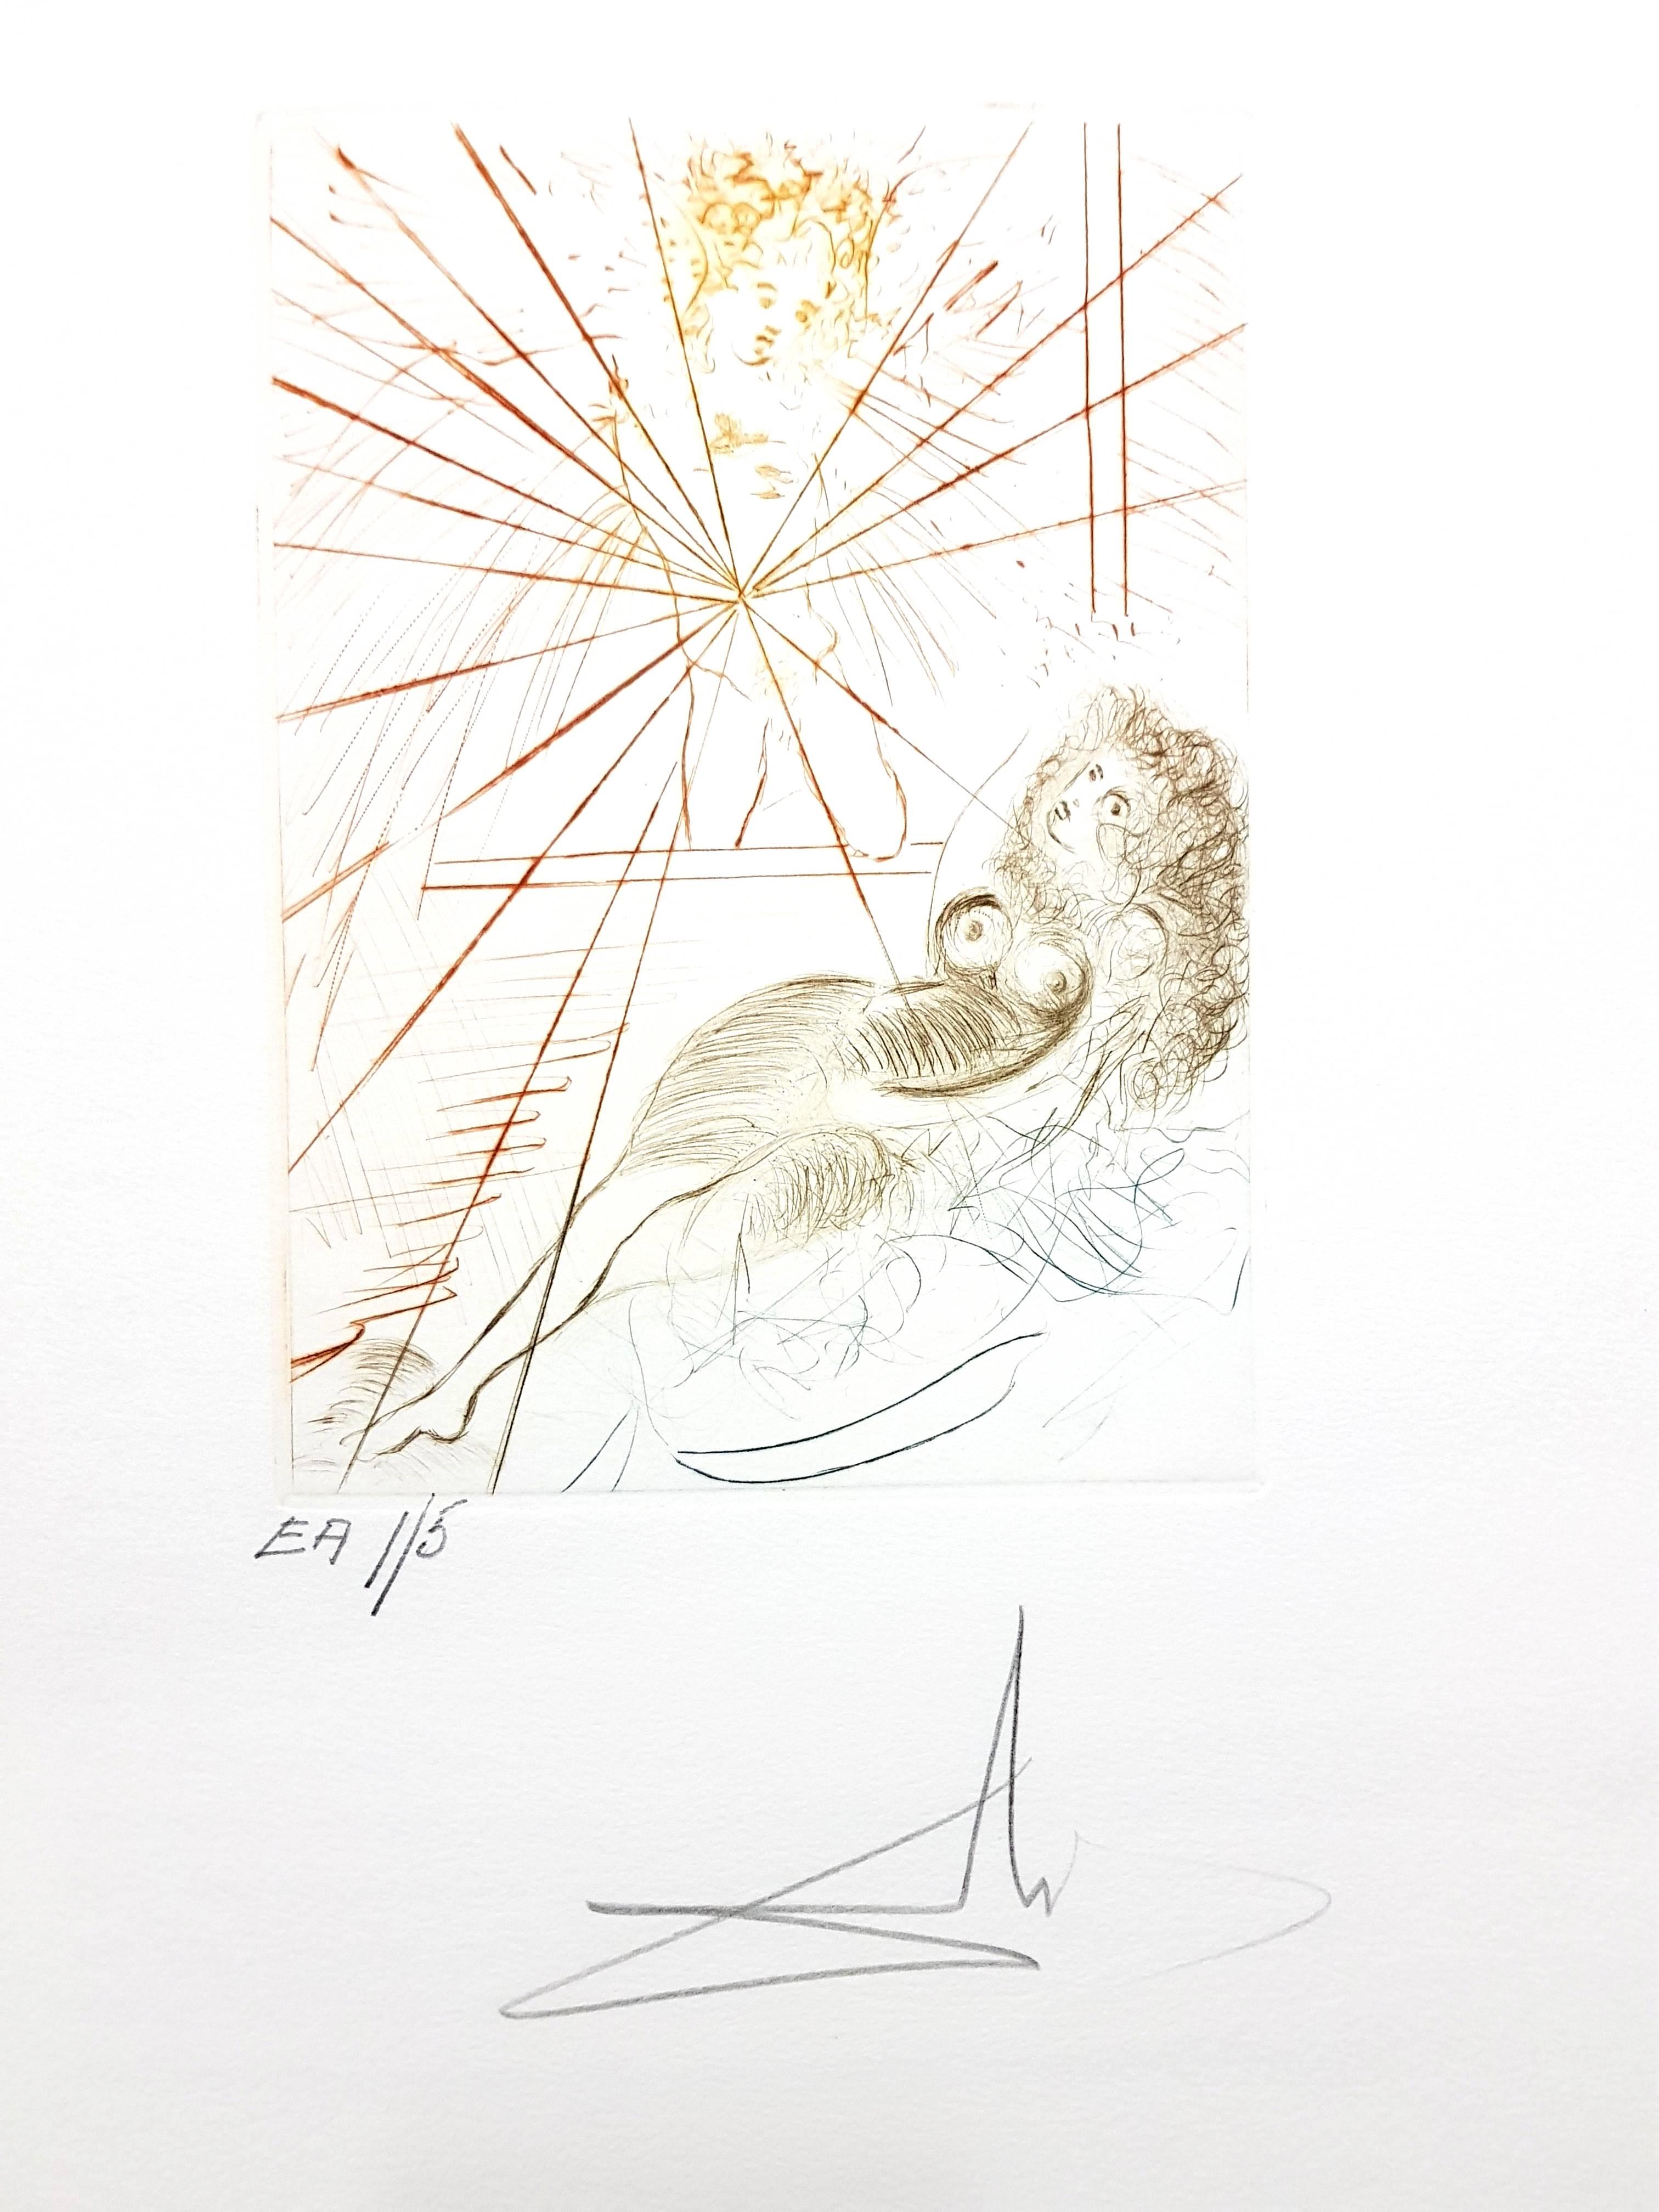 Mappe mit 10 signierten Originalgravuren von Salvador Dali
Titel: Dekameron
Mit Bleistift signiert von Salvador Dali
Abmessungen: 45 x 32 cm
Ausgabe EA 1/5
1972
Referenzen : Field 72-8 (S. 80-81) / Michler & Lopsinger 551-562 (t.1 S. 206-207)